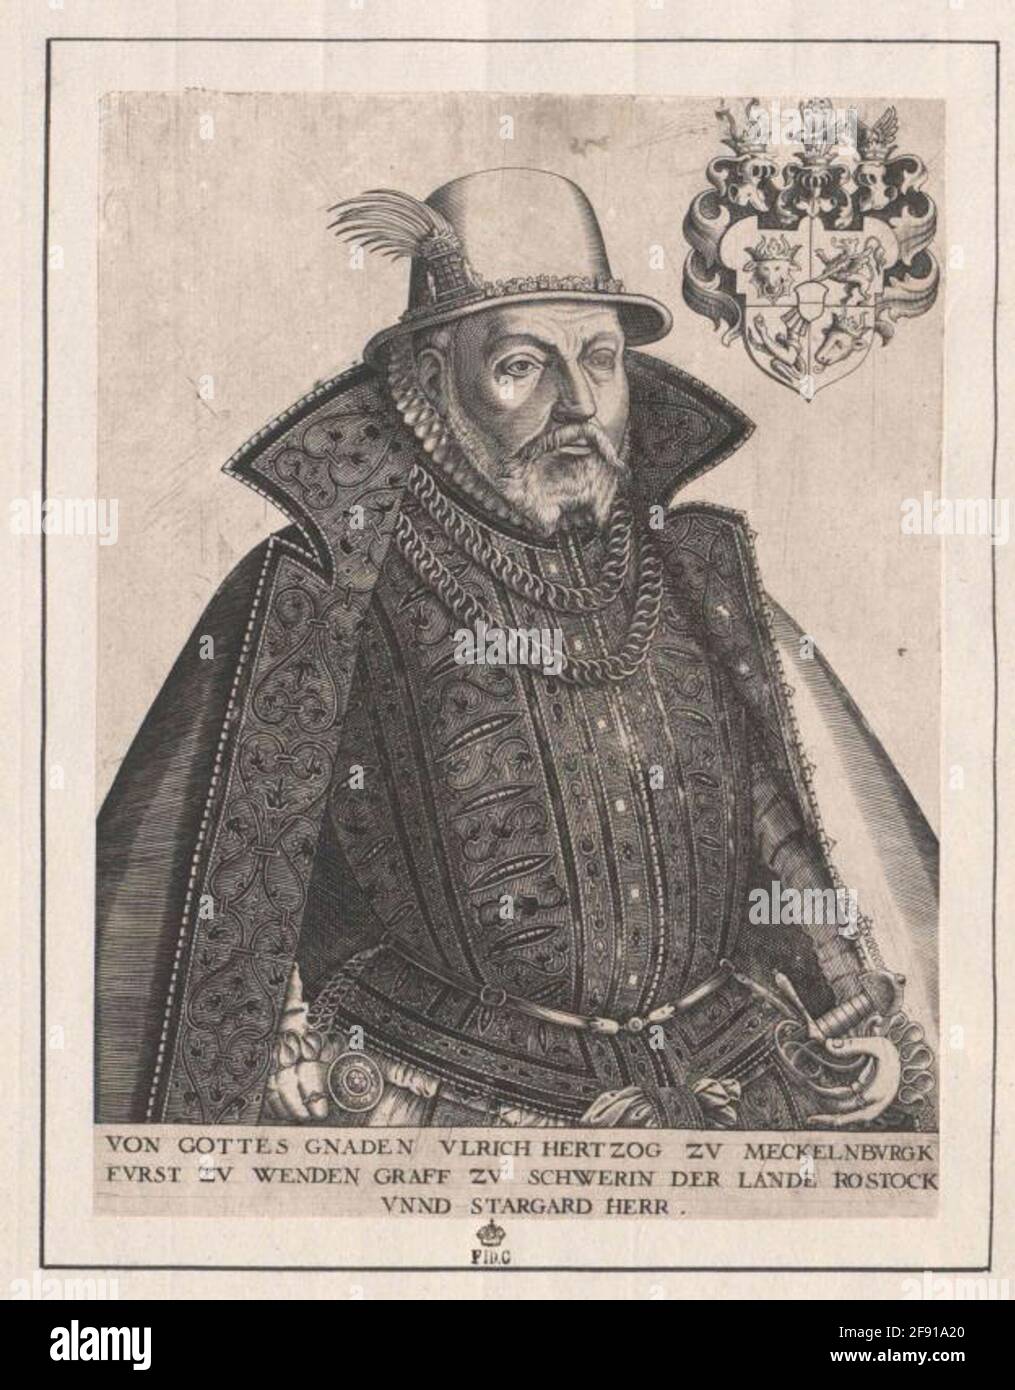 Ulrich III., Duke of Mecklenburg. Stock Photo